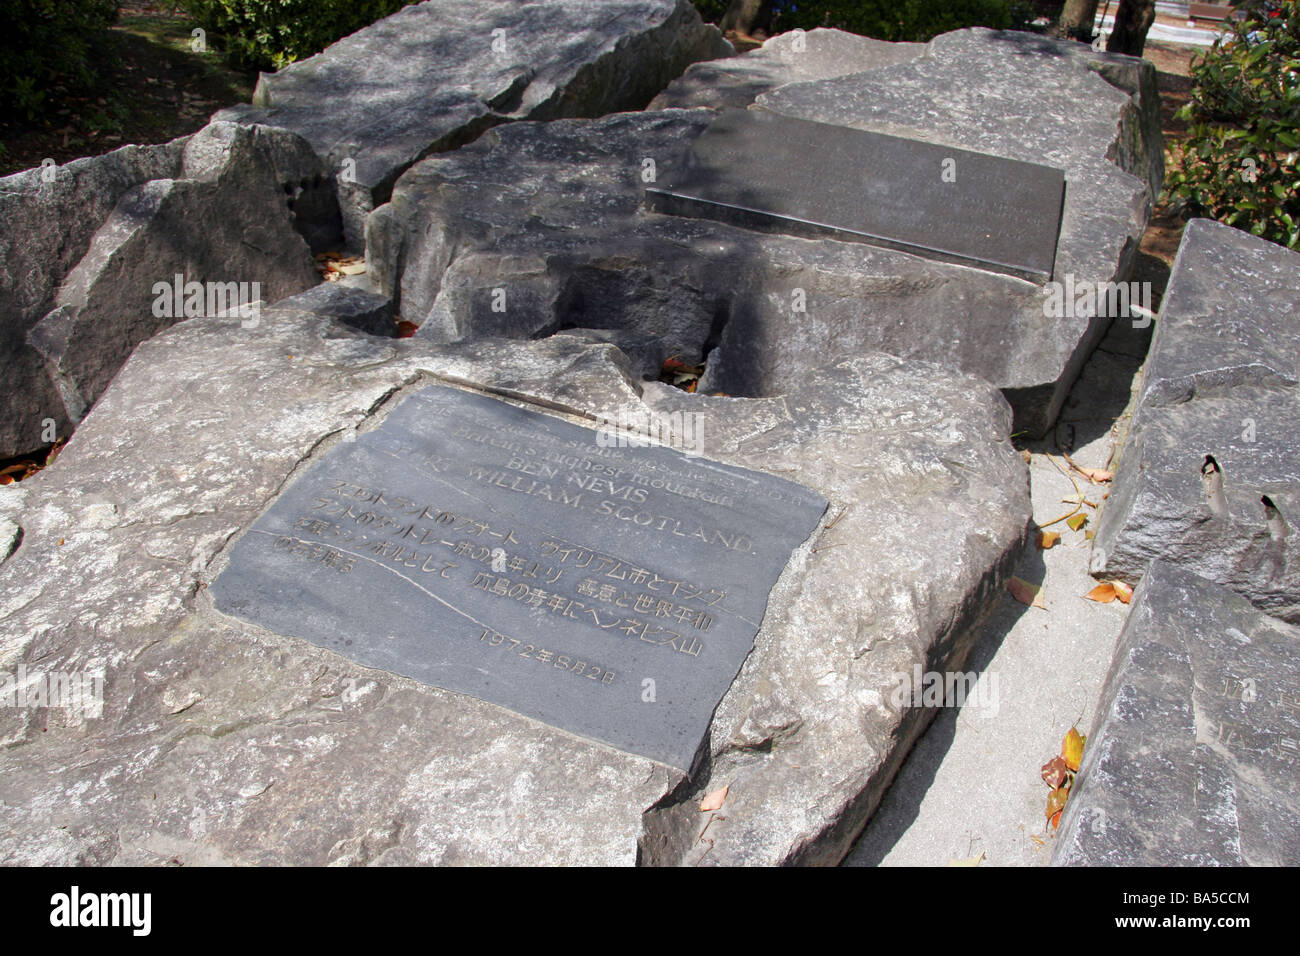 La pietra di Ben Nevis dato come un memoriale presso il Parco della Pace di Hiroshima in Giappone Foto Stock